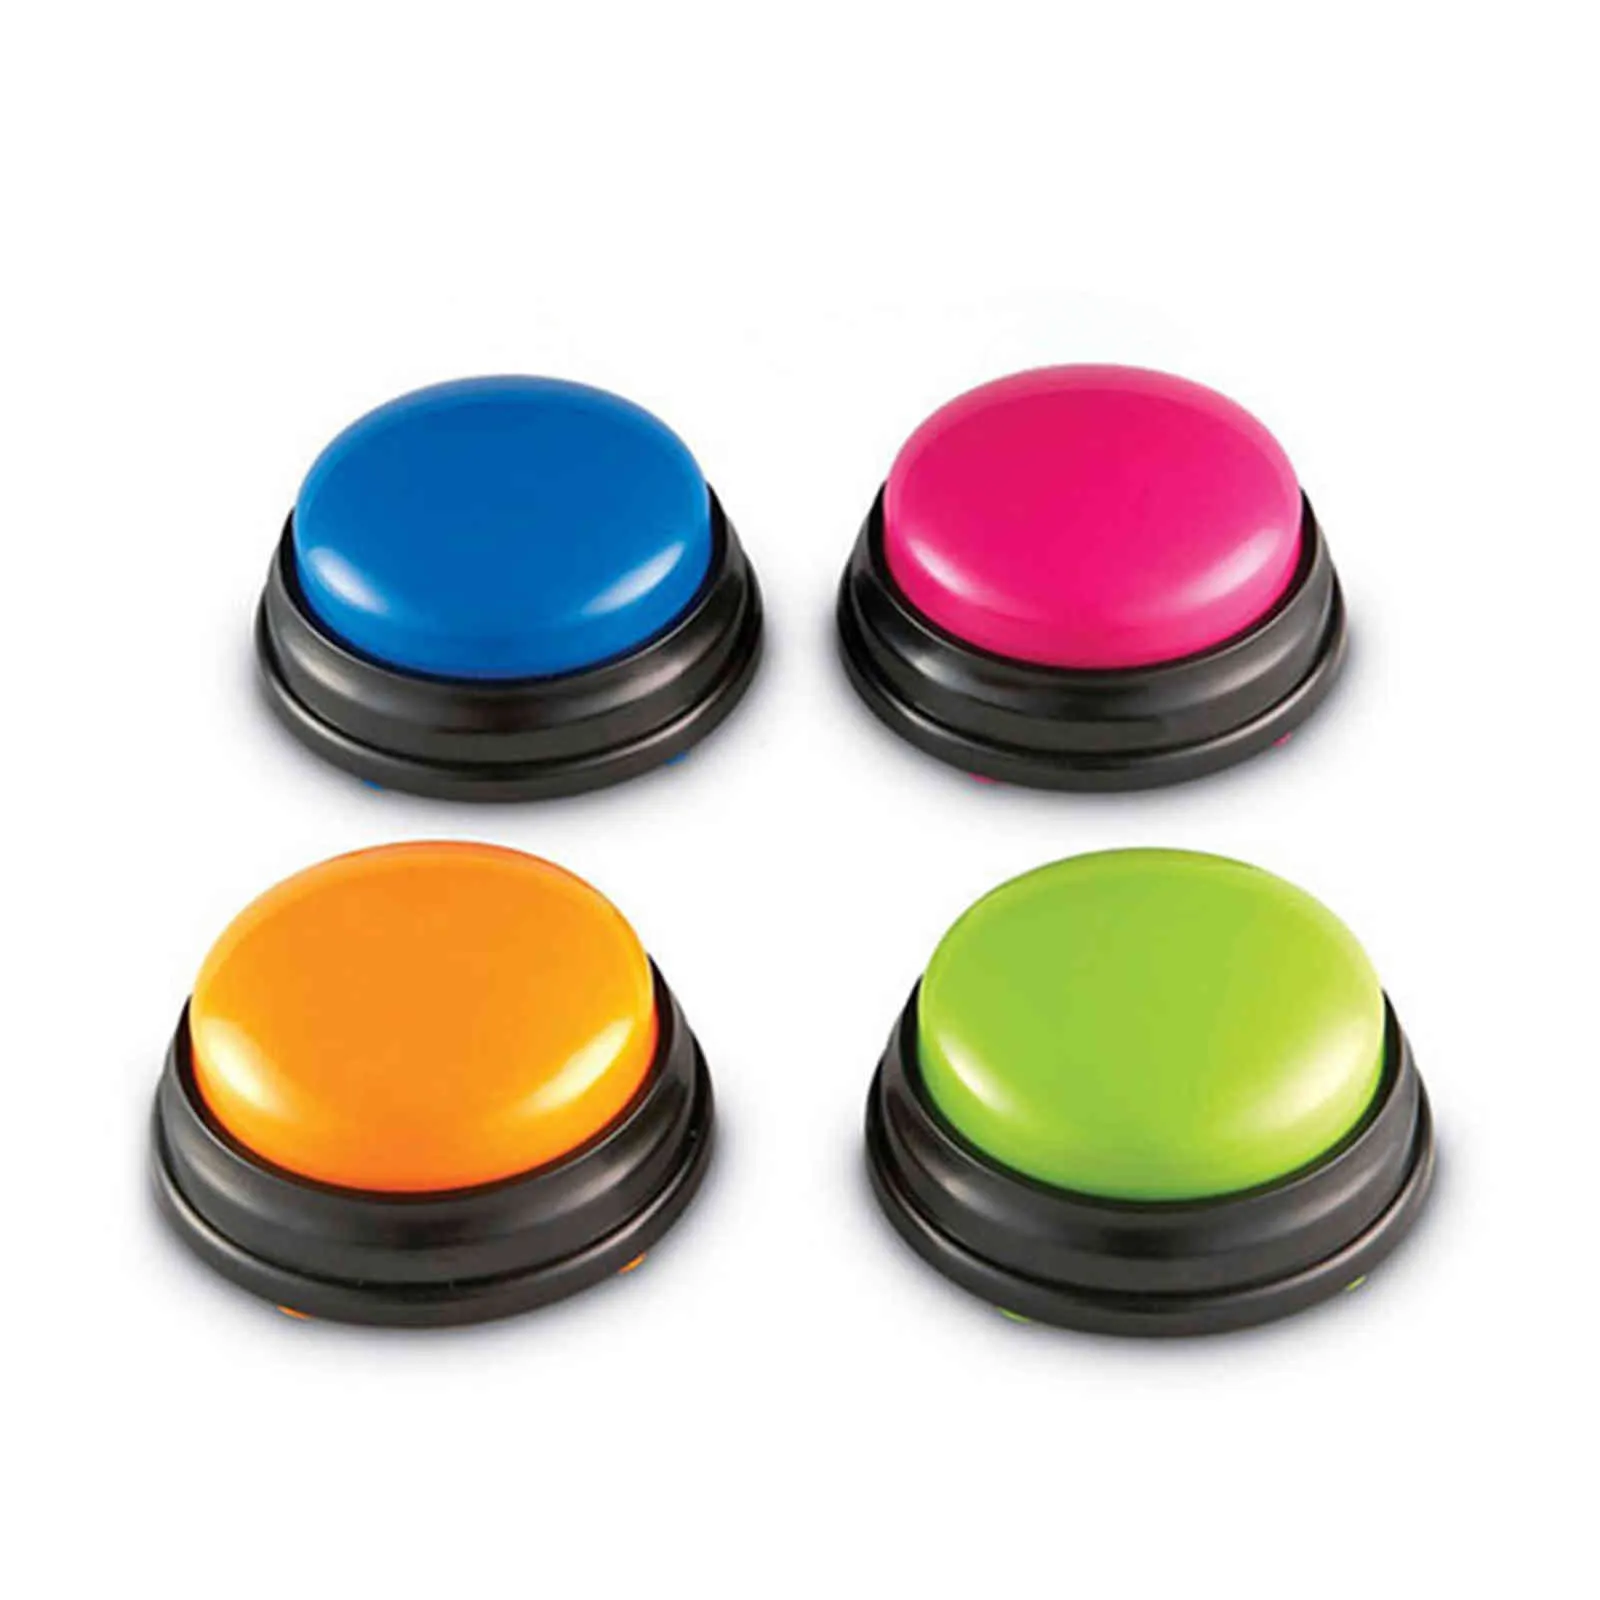 Кнопка записи звука, маленький размер, удобный перенос голоса для детей, интерактивная игрушка, кнопки ответа, оранжевый, розовый, синий, зеленый, Noise Maker274f